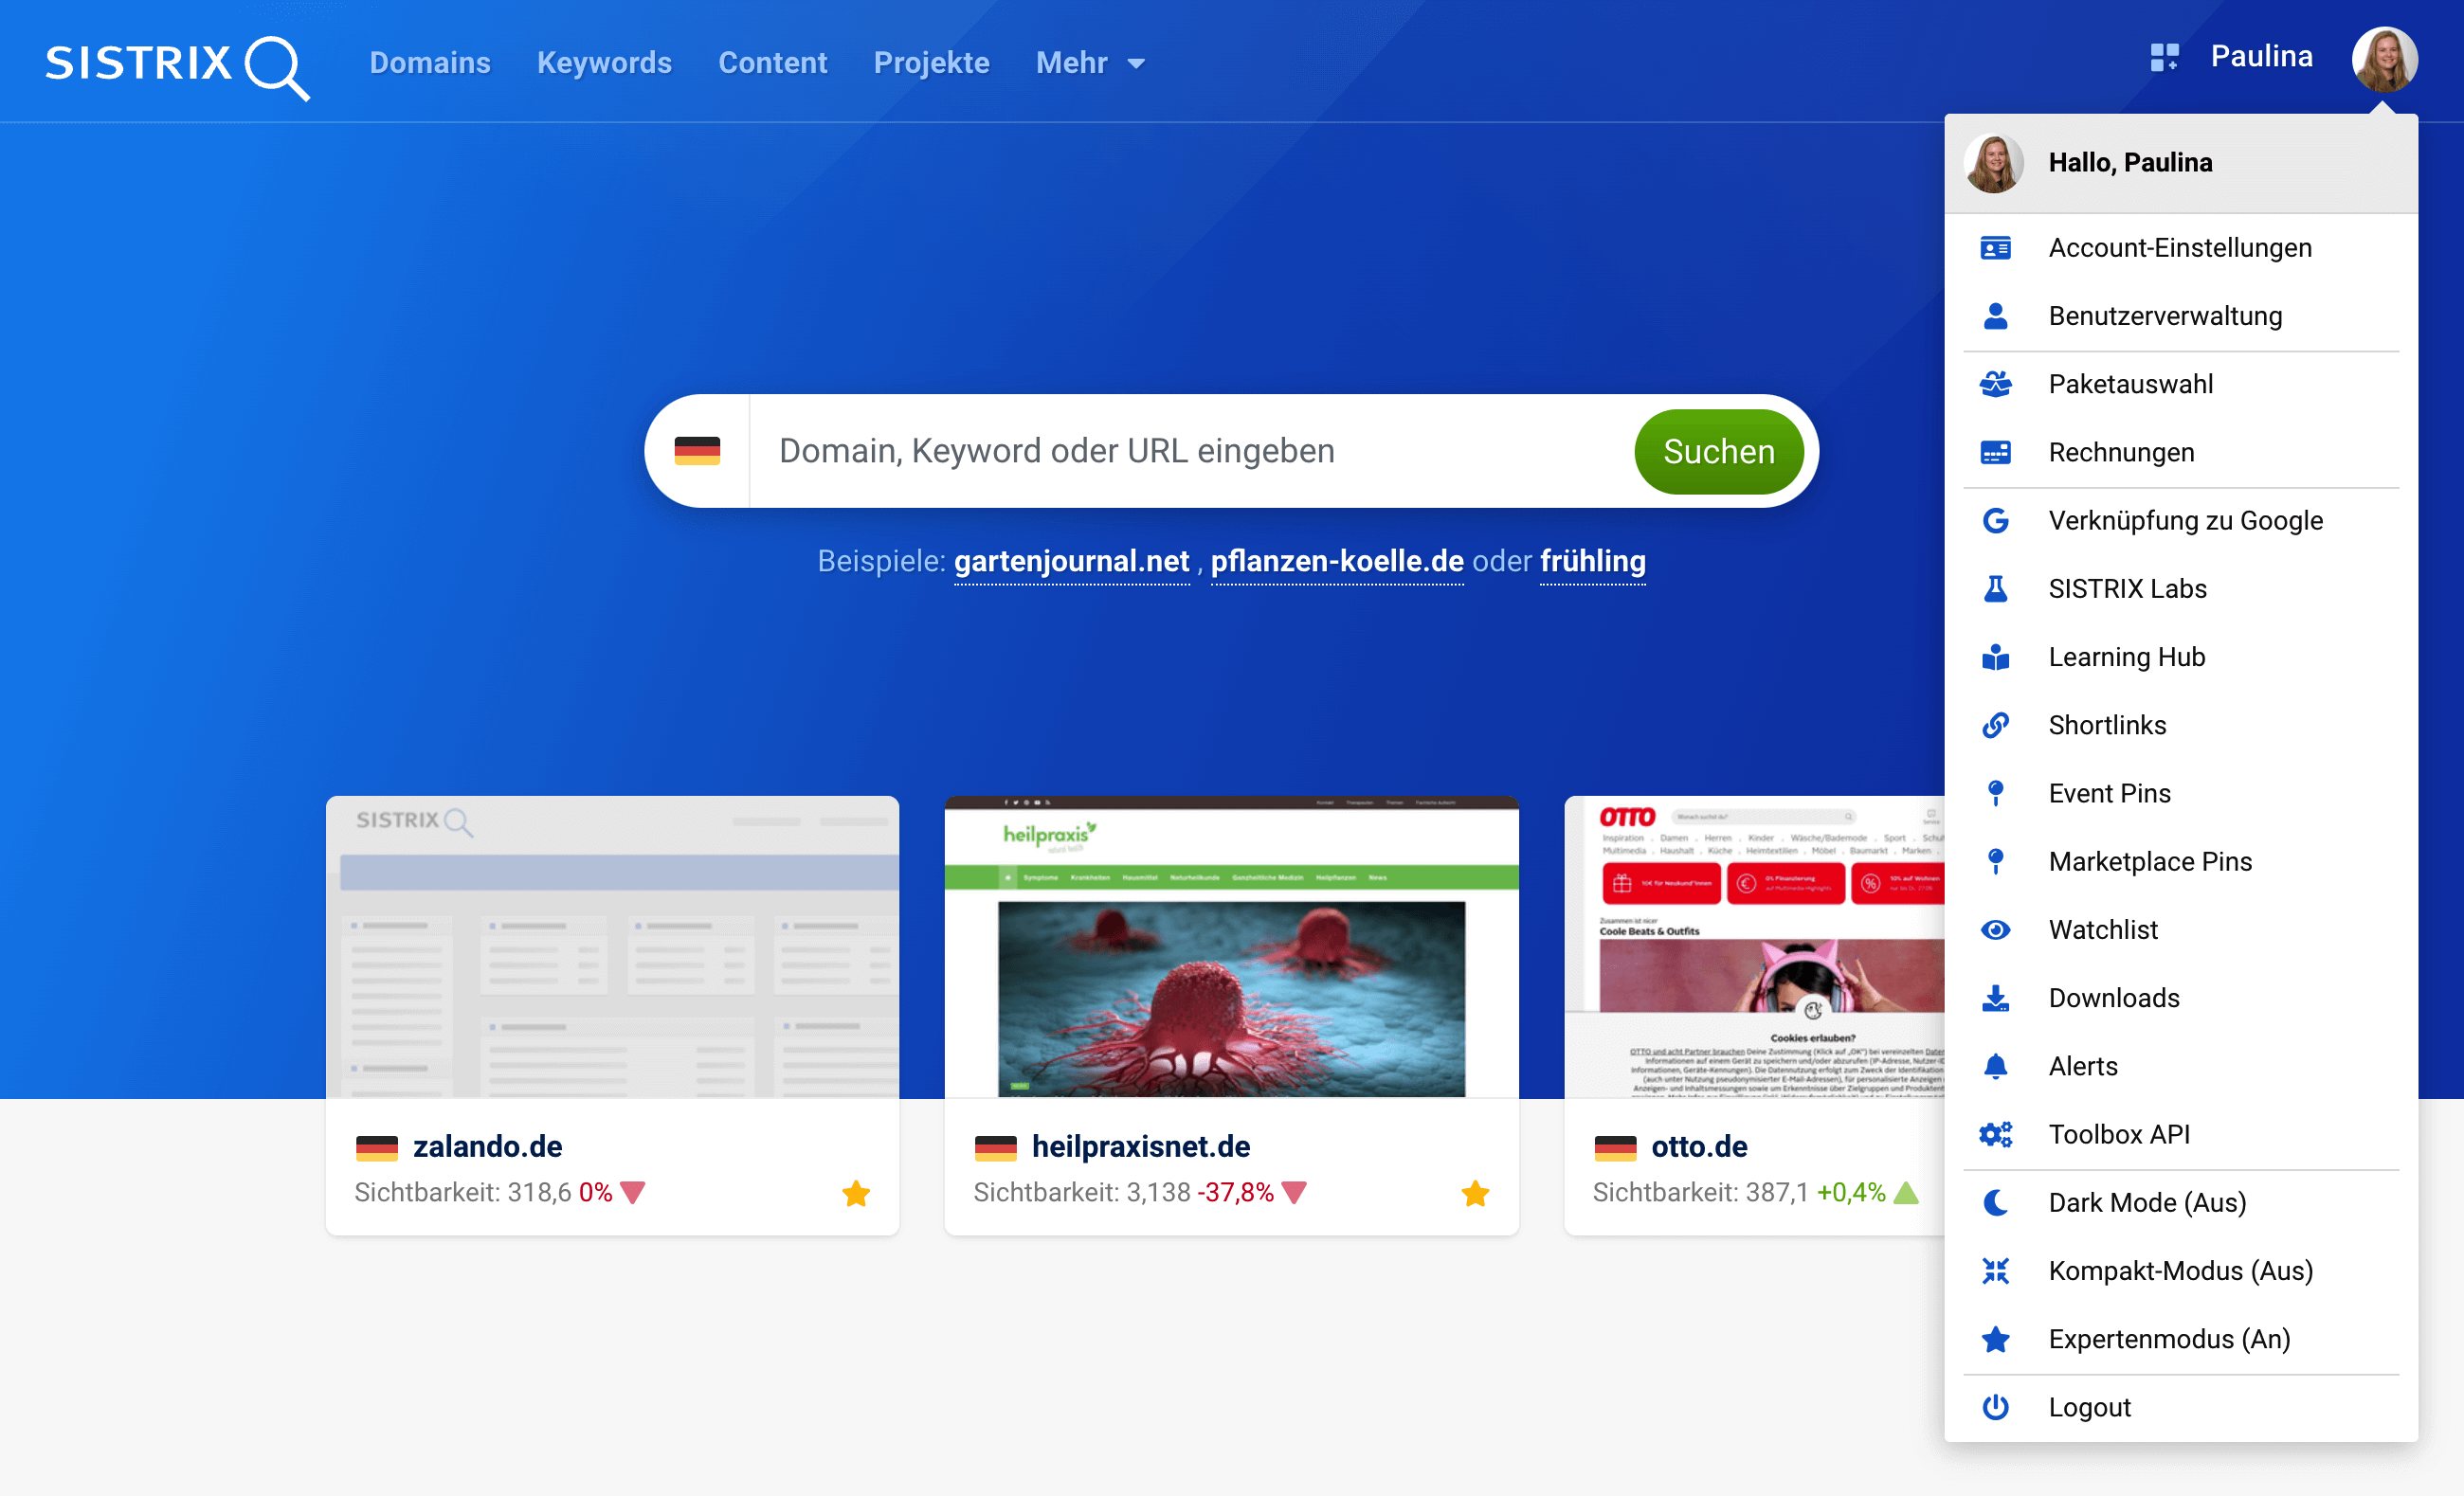 Mit Klick auf das eigene Profilbild oben rechts in der SISTRIX Toolbox öffnen sich zahlreiche Menüpunkte, die die Accounteinstellungen betreffen.